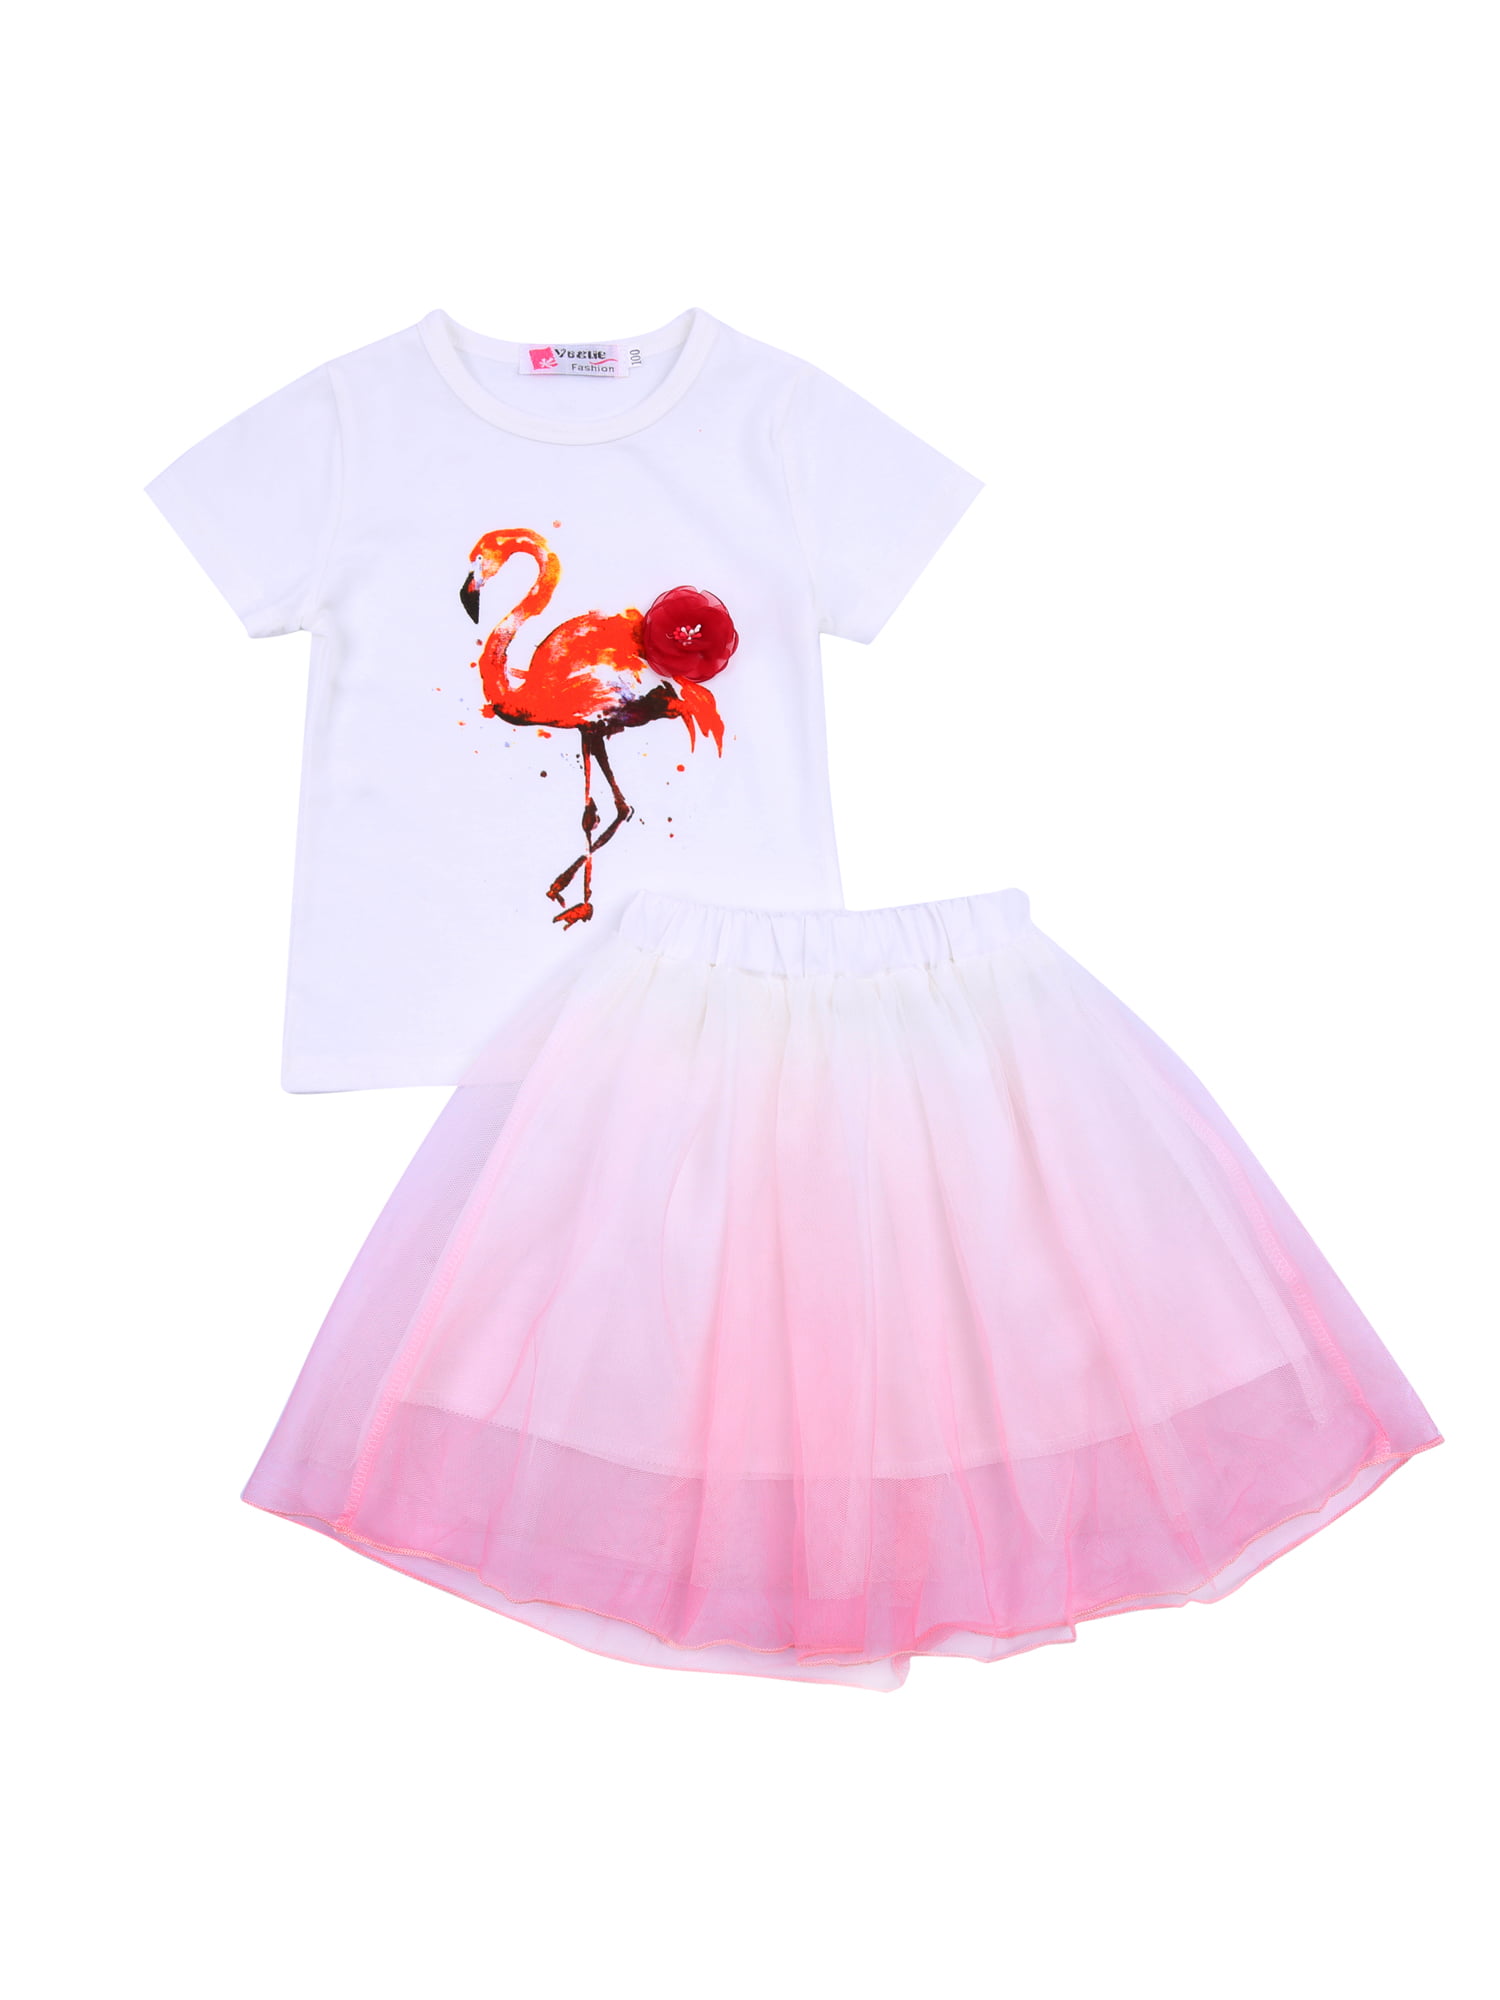 T Shirt + Skirt Girl Tops T Shirt Tulle Tutu Skirt Children Kids Flamingo Skirt Girl Clothing Set 2 PCS 